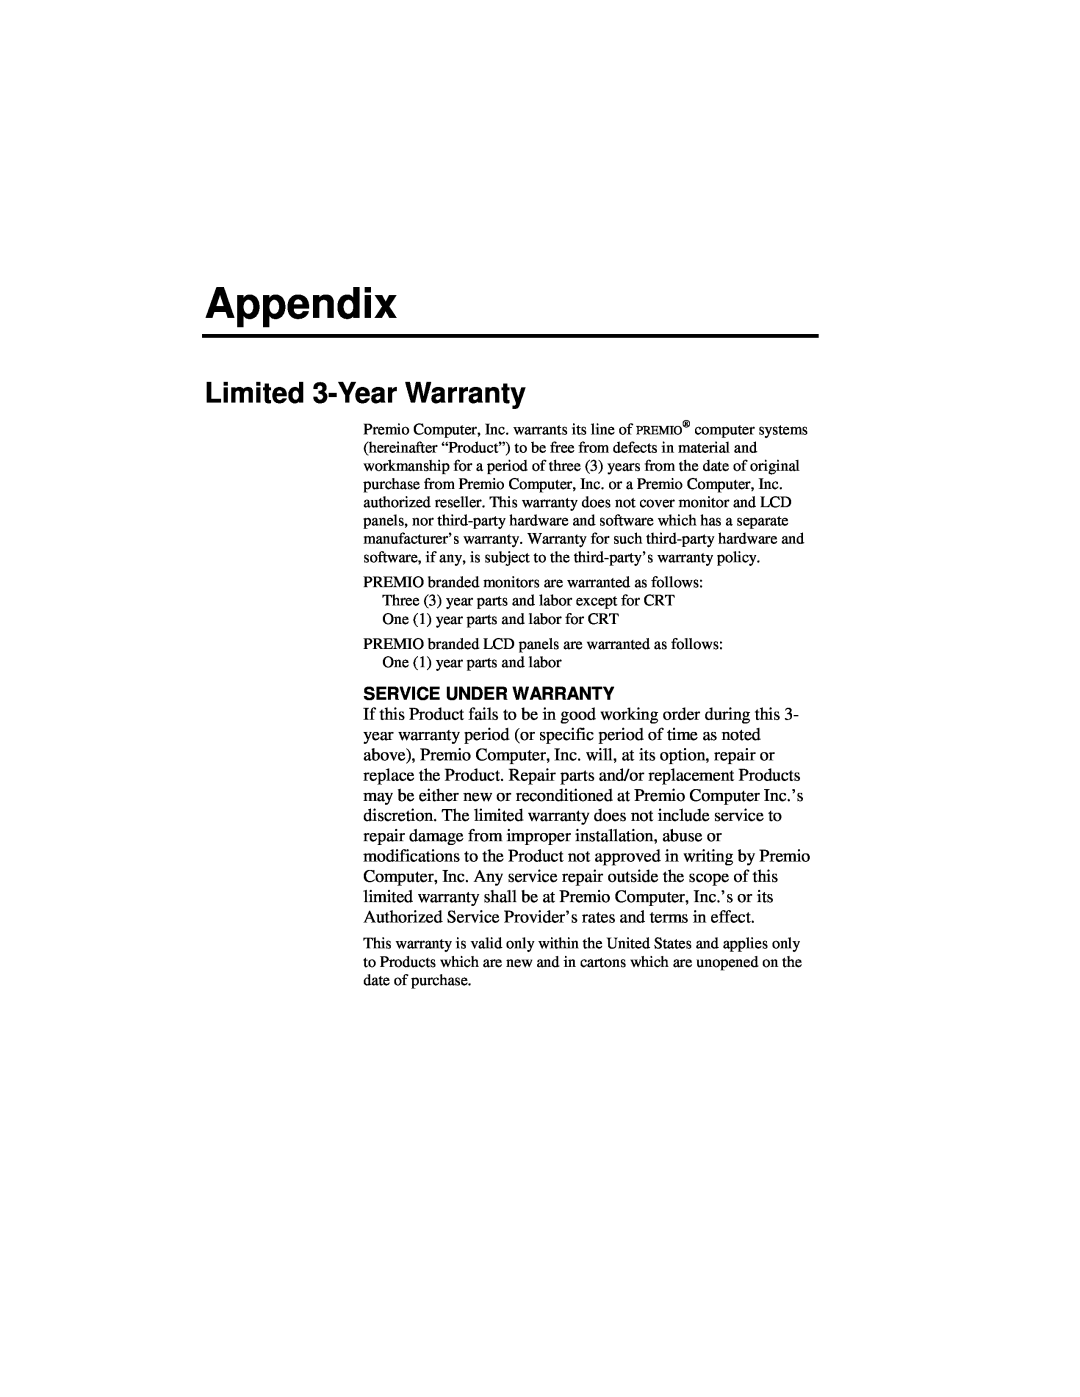 Premio Computer Apollo/Shadowhawk user manual Appendix, Limited 3-Year Warranty, Service Under Warranty 